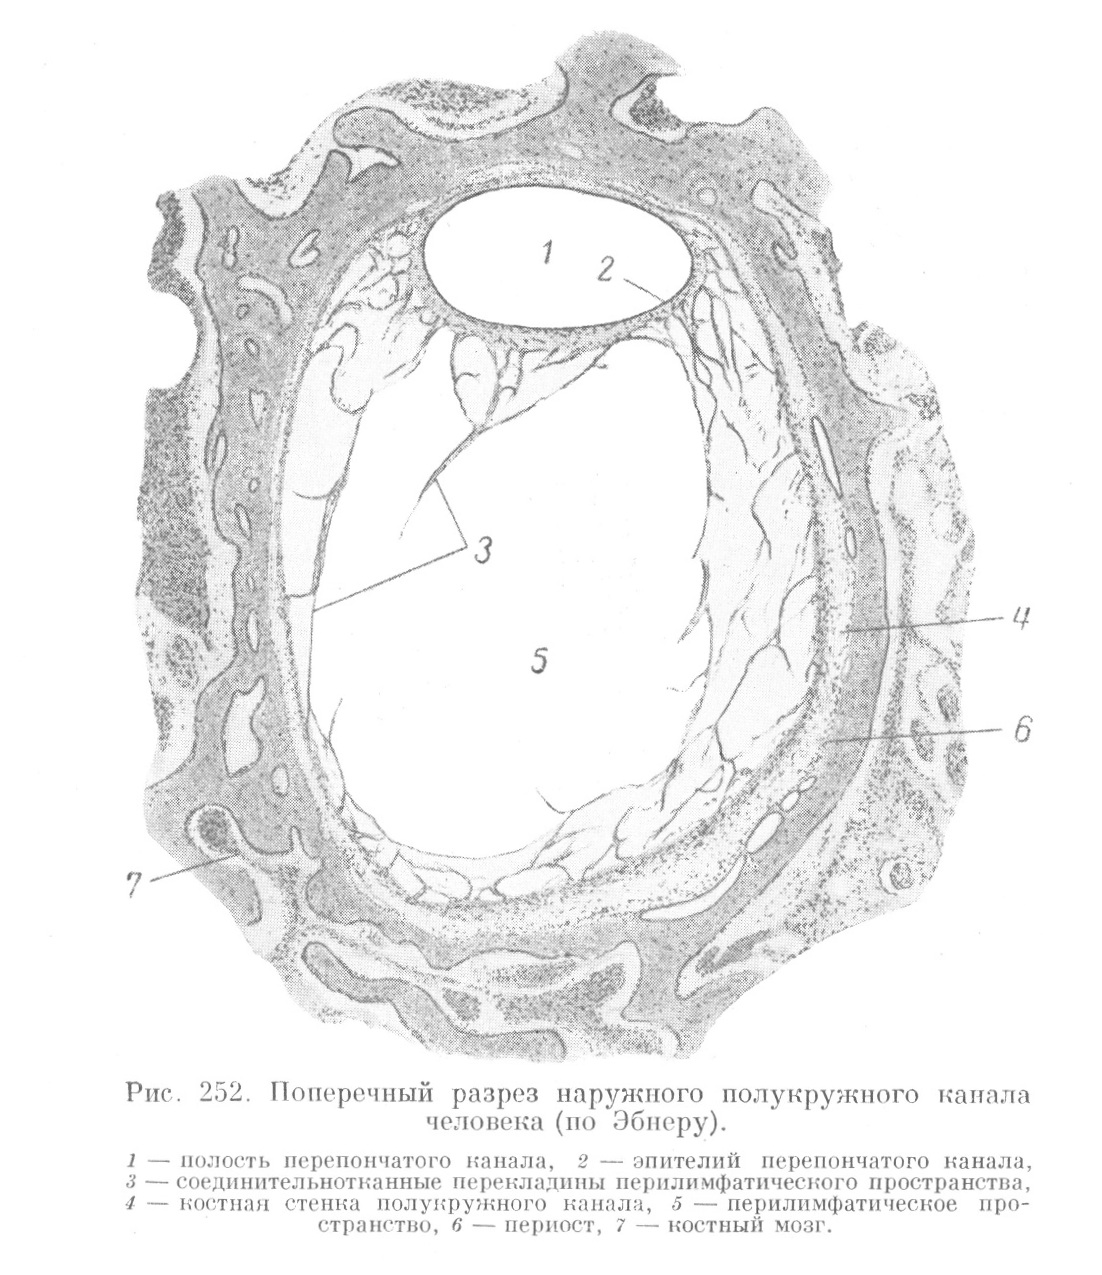 Полукружные каналы, ампулы и пузырьки (utriculus и sacculus)